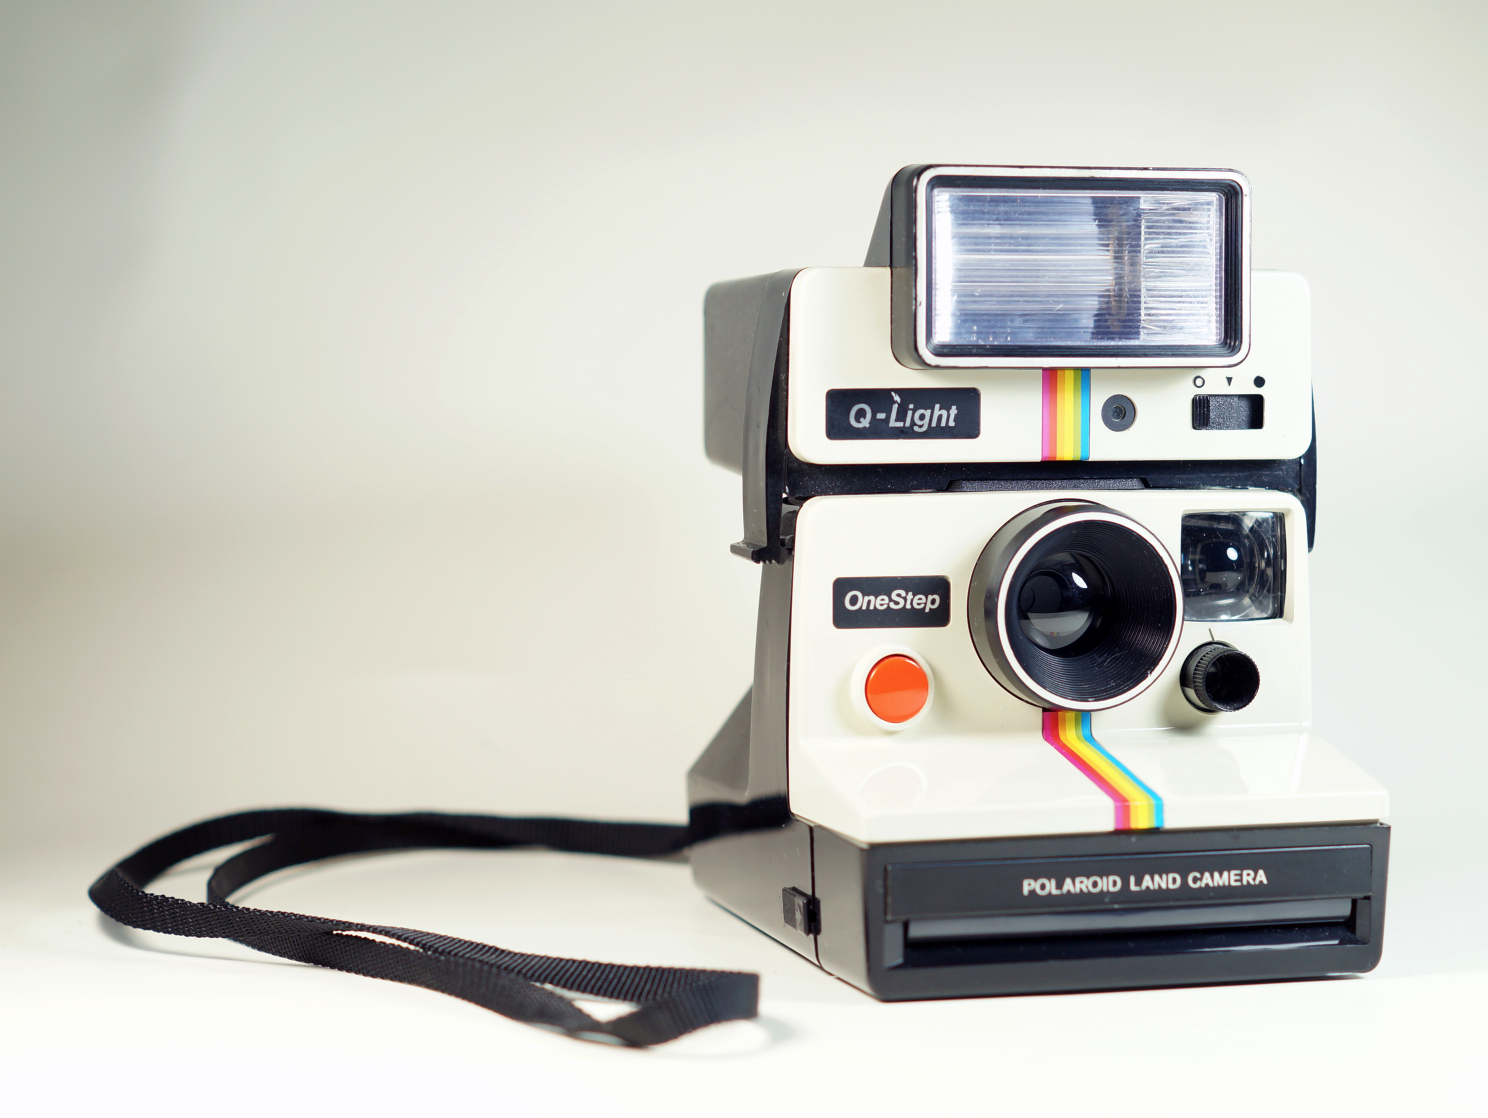 Фотоаппарат мгновенной печати (паларойд) — как он работает?